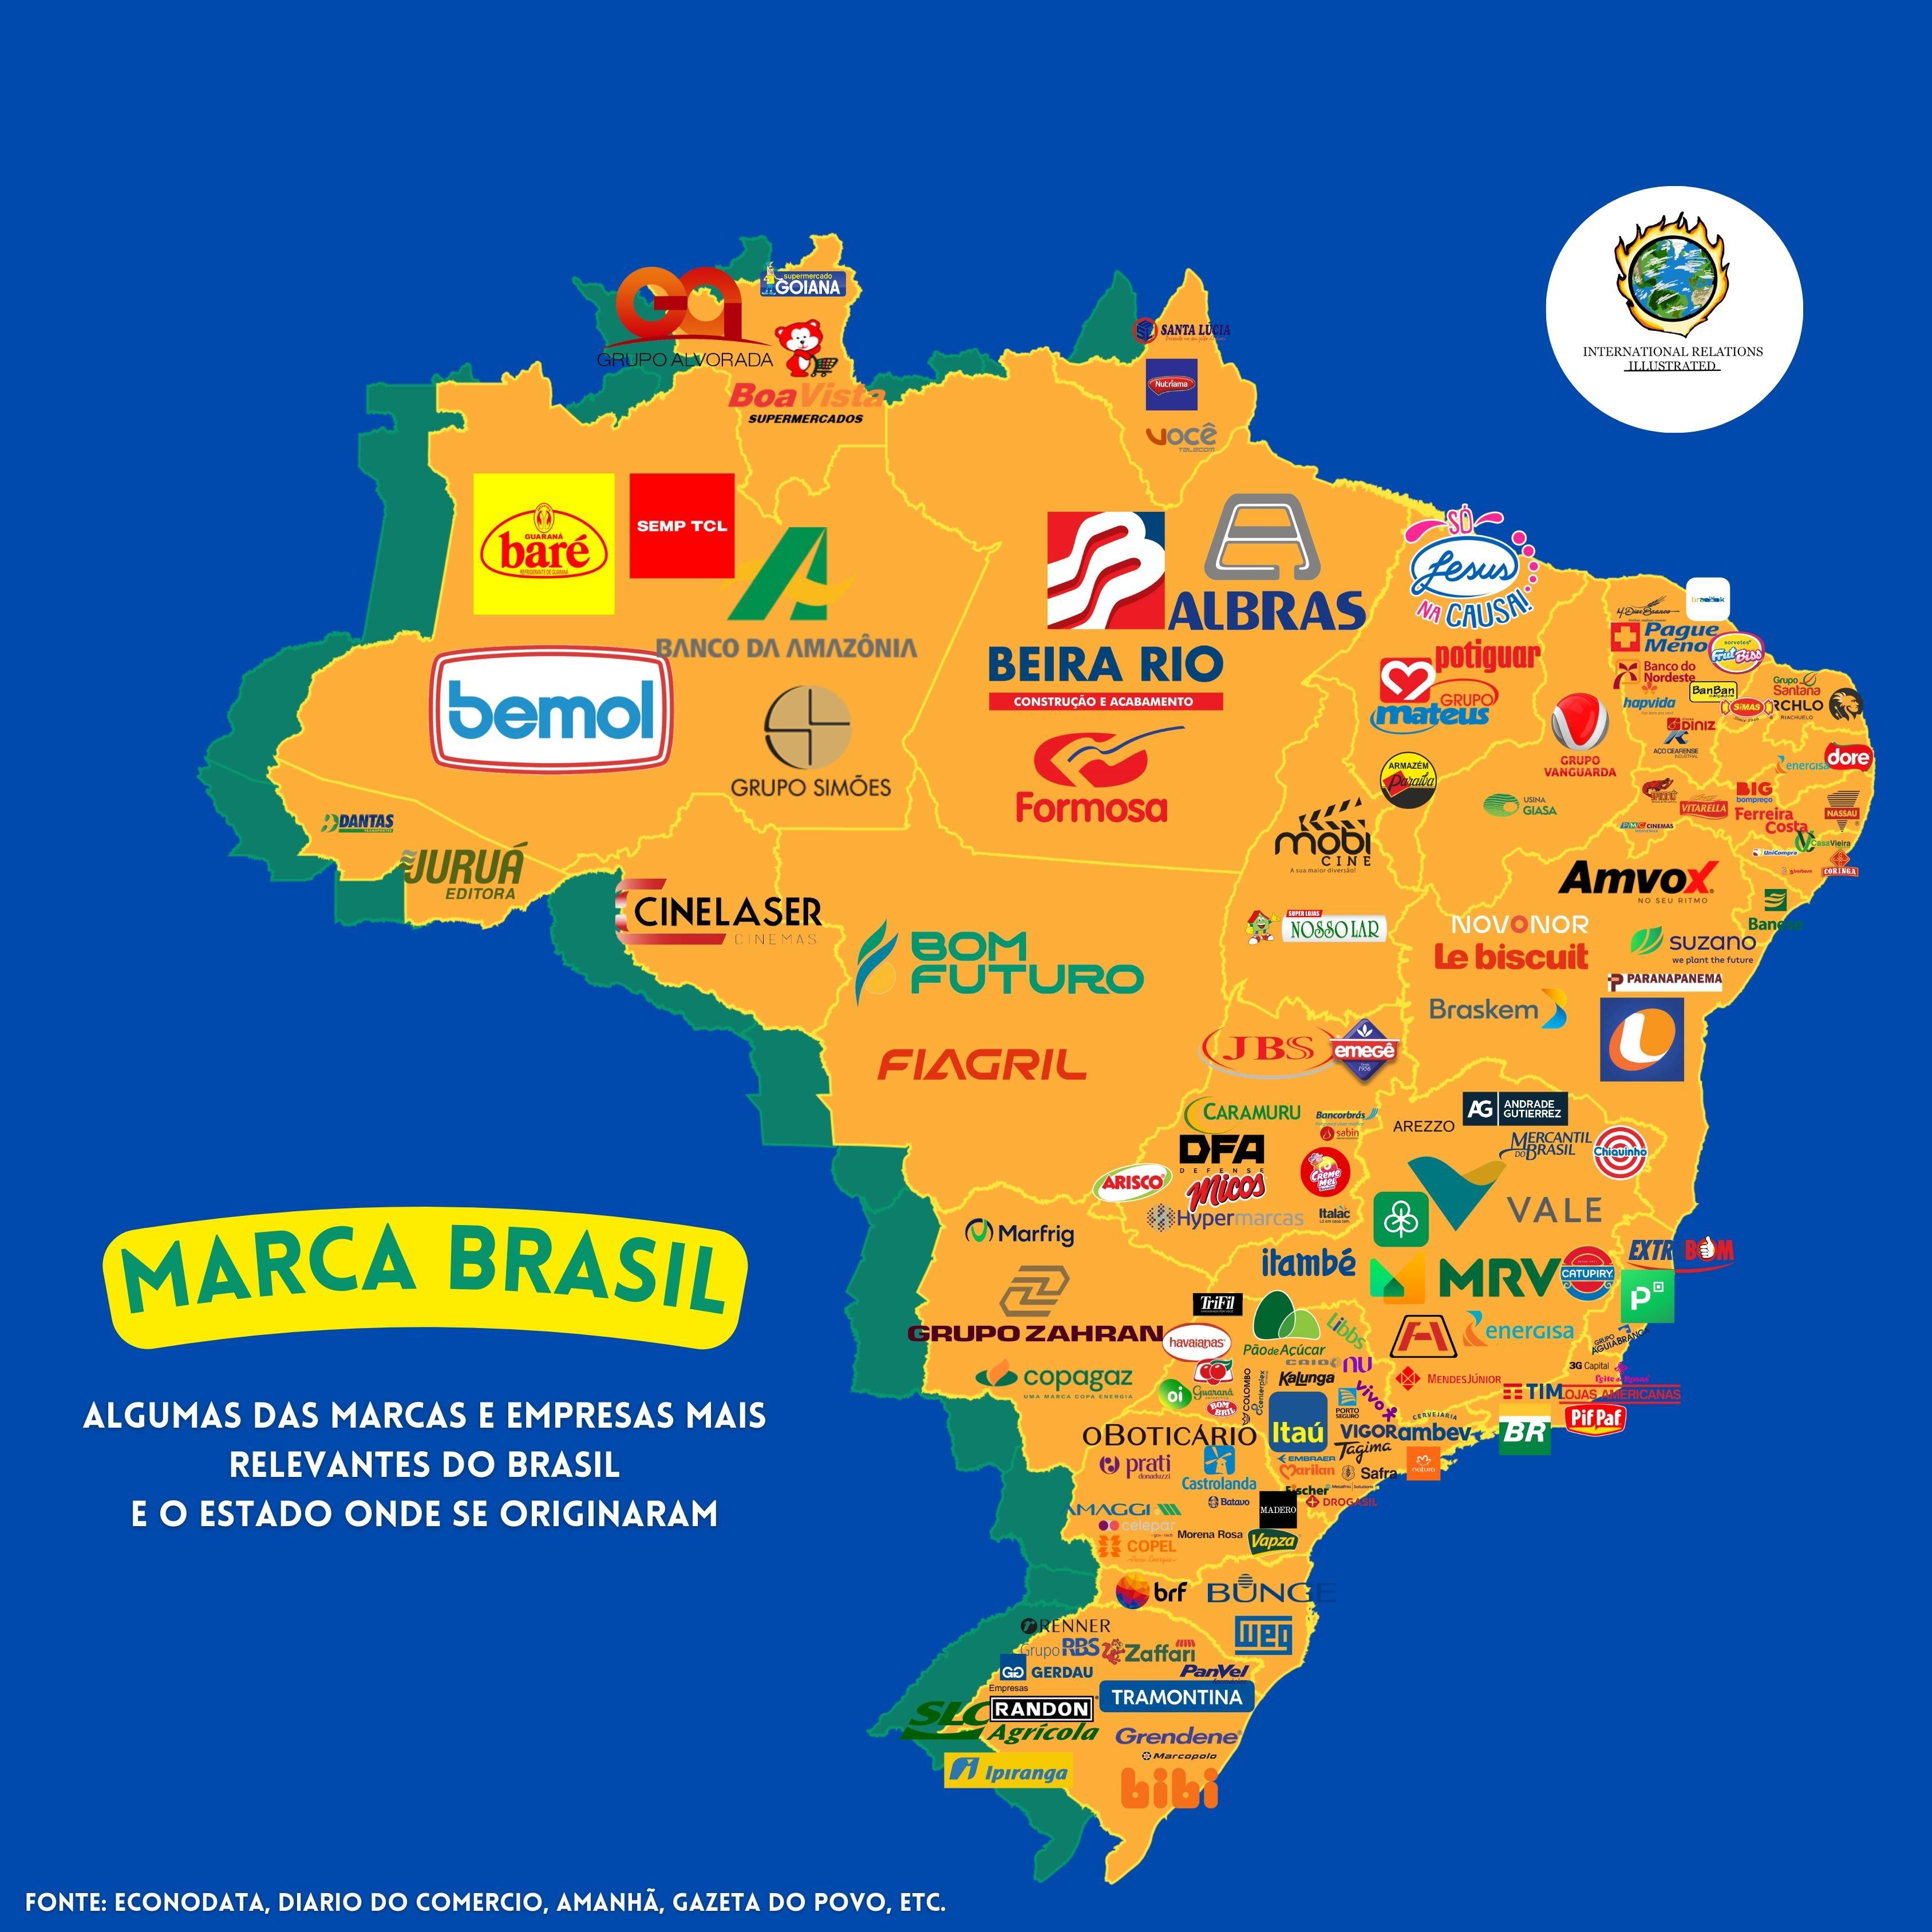 Znane firmy (marki) w brazylijskich regionach